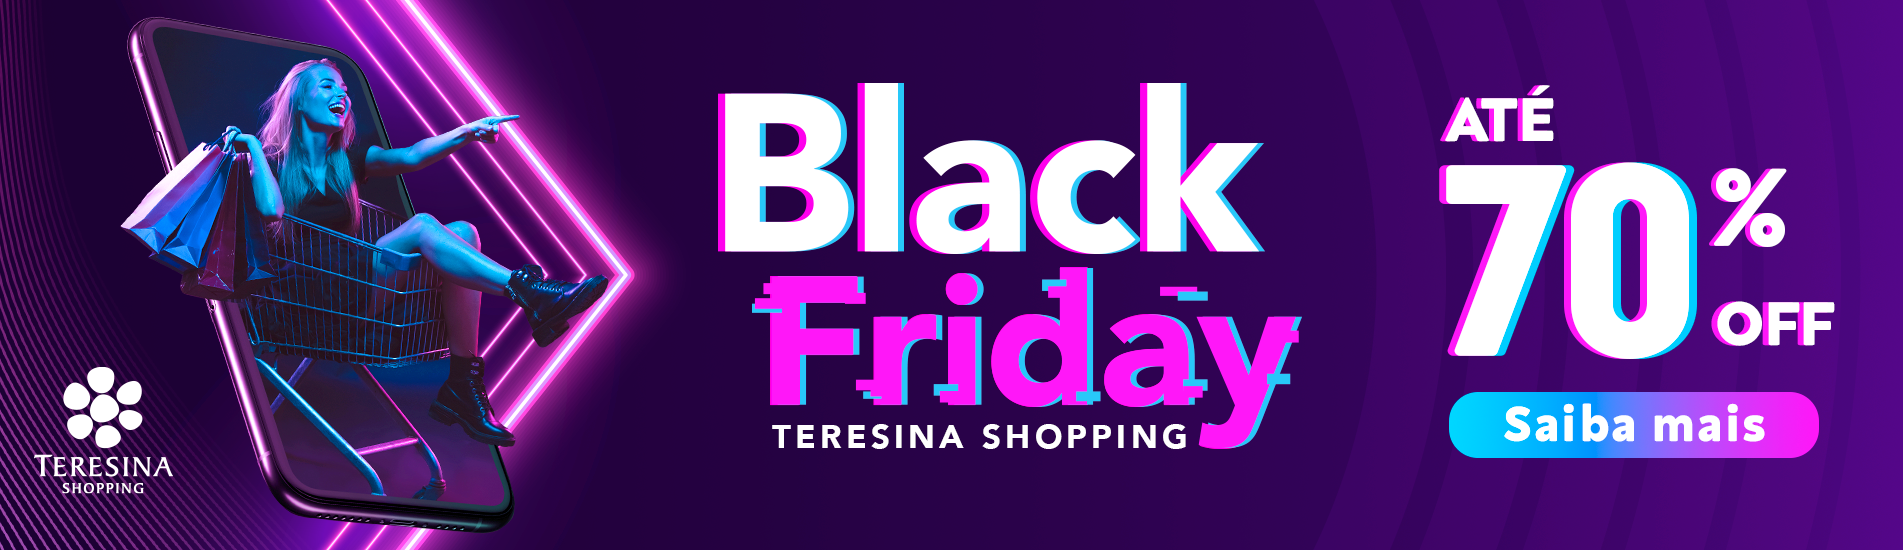 Black Friday do Teresina Shopping acontece de 22 a 28 de novembro